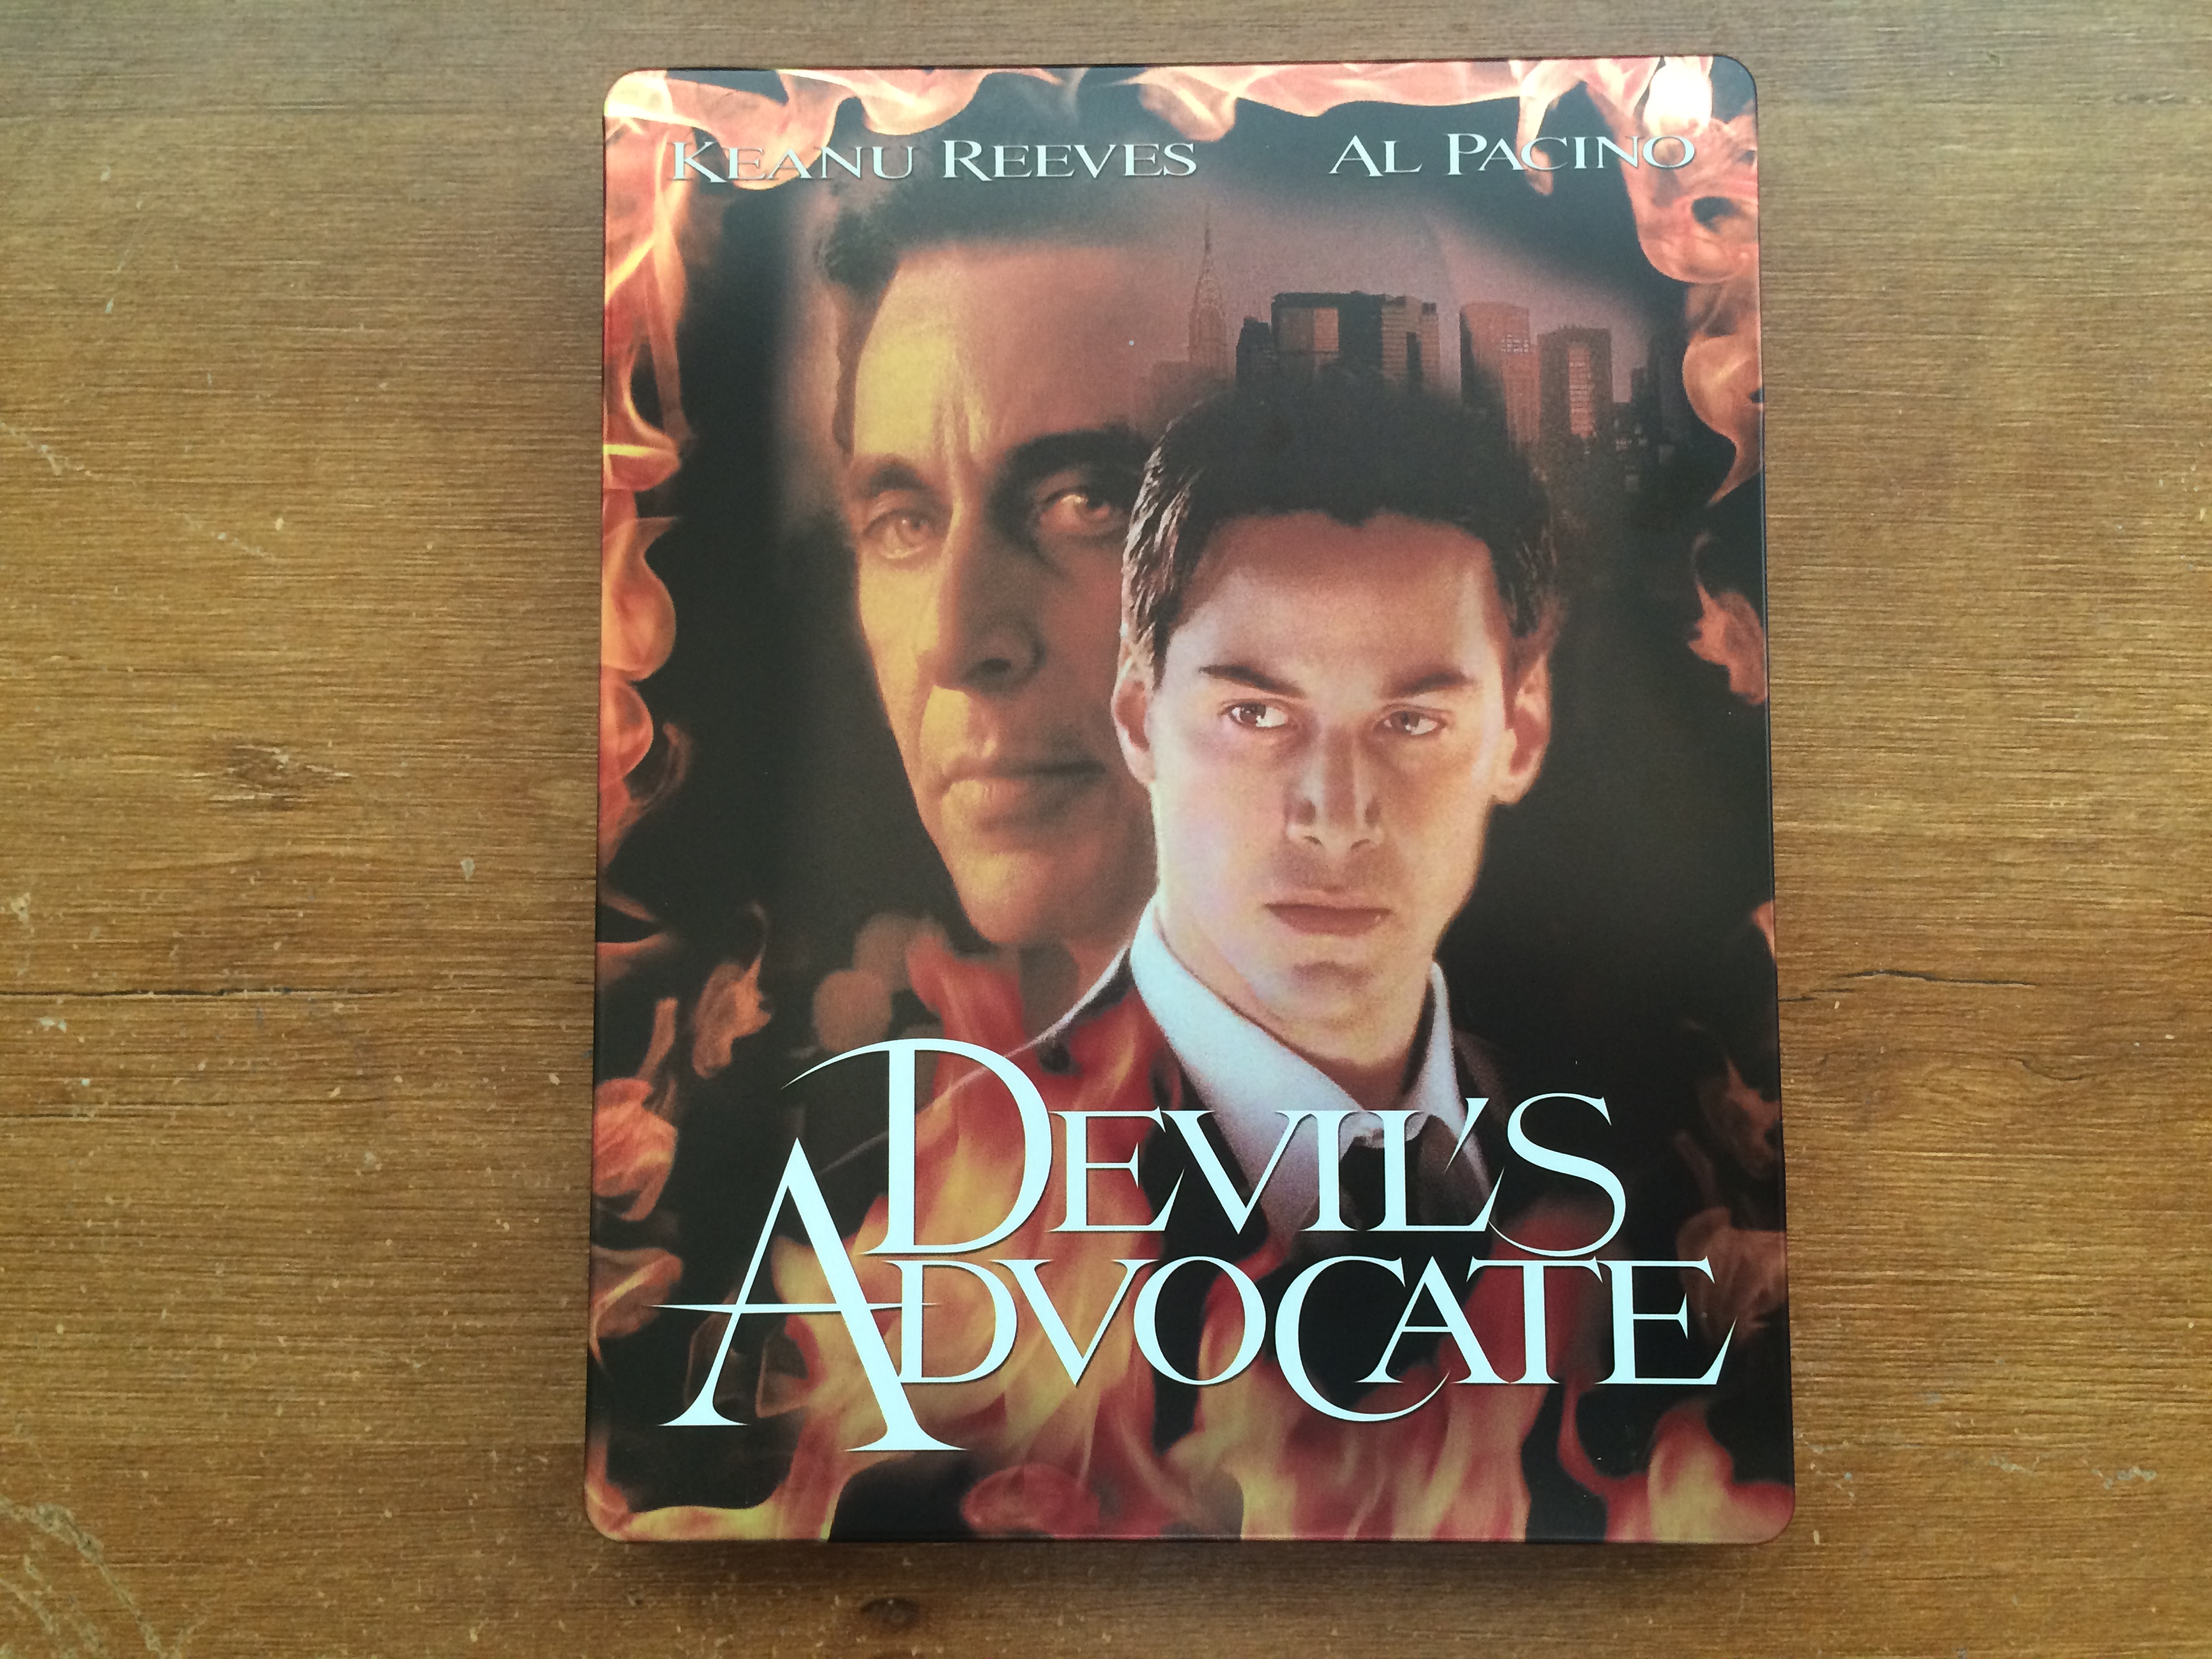 The Devil's Advocate - Steelbook